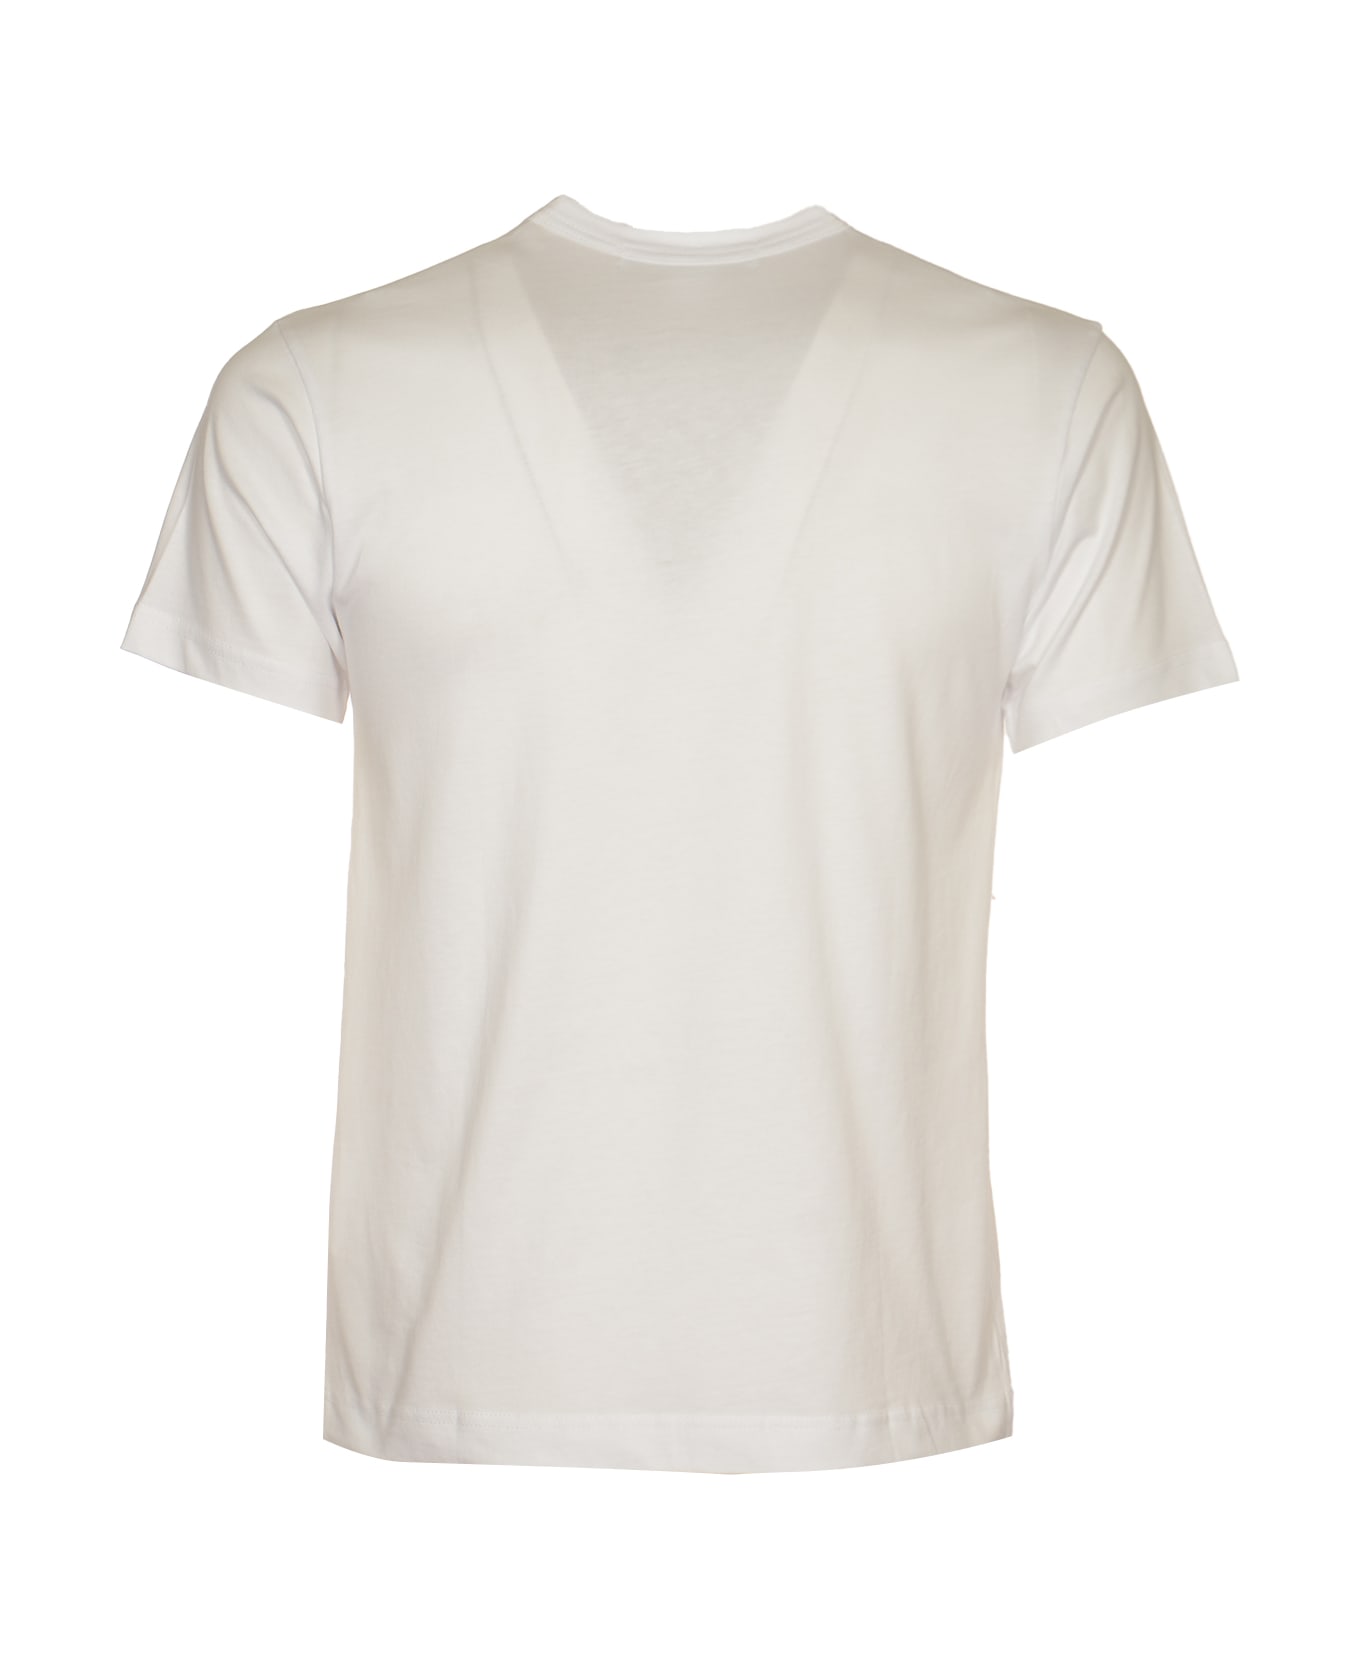 Comme des Garçons Madonna Print T-shirt - White シャツ